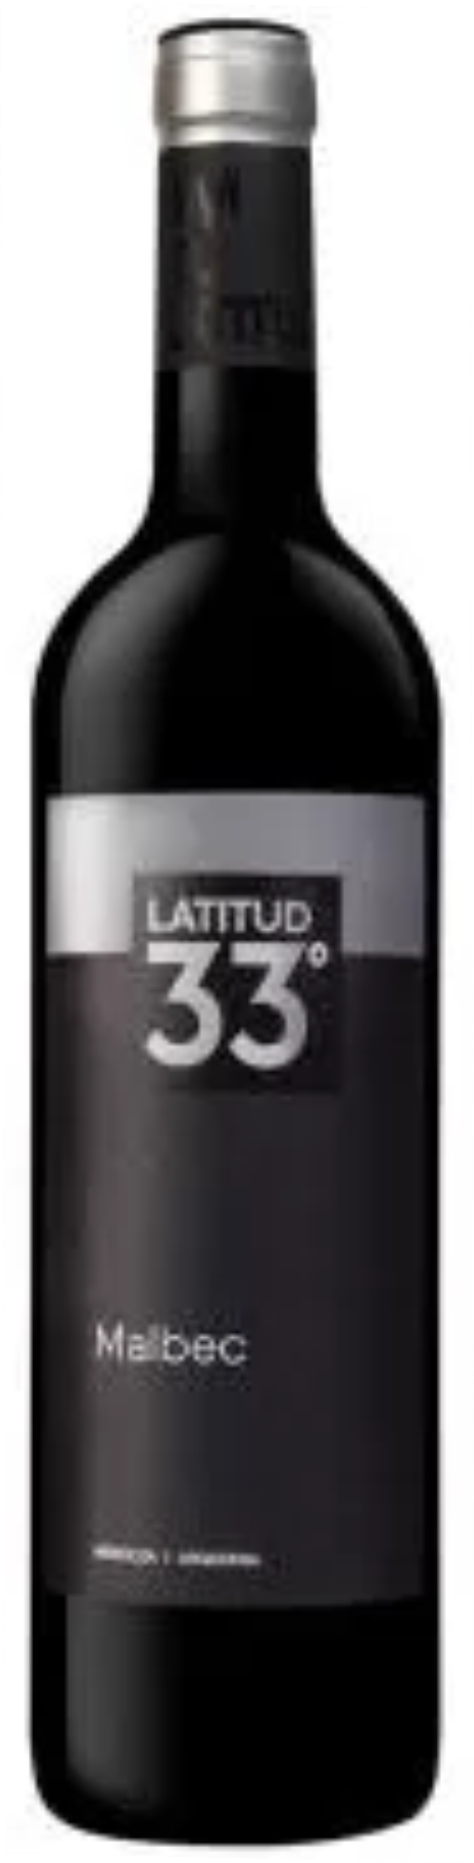 Vinho Tinto Latitude 33 Malbec